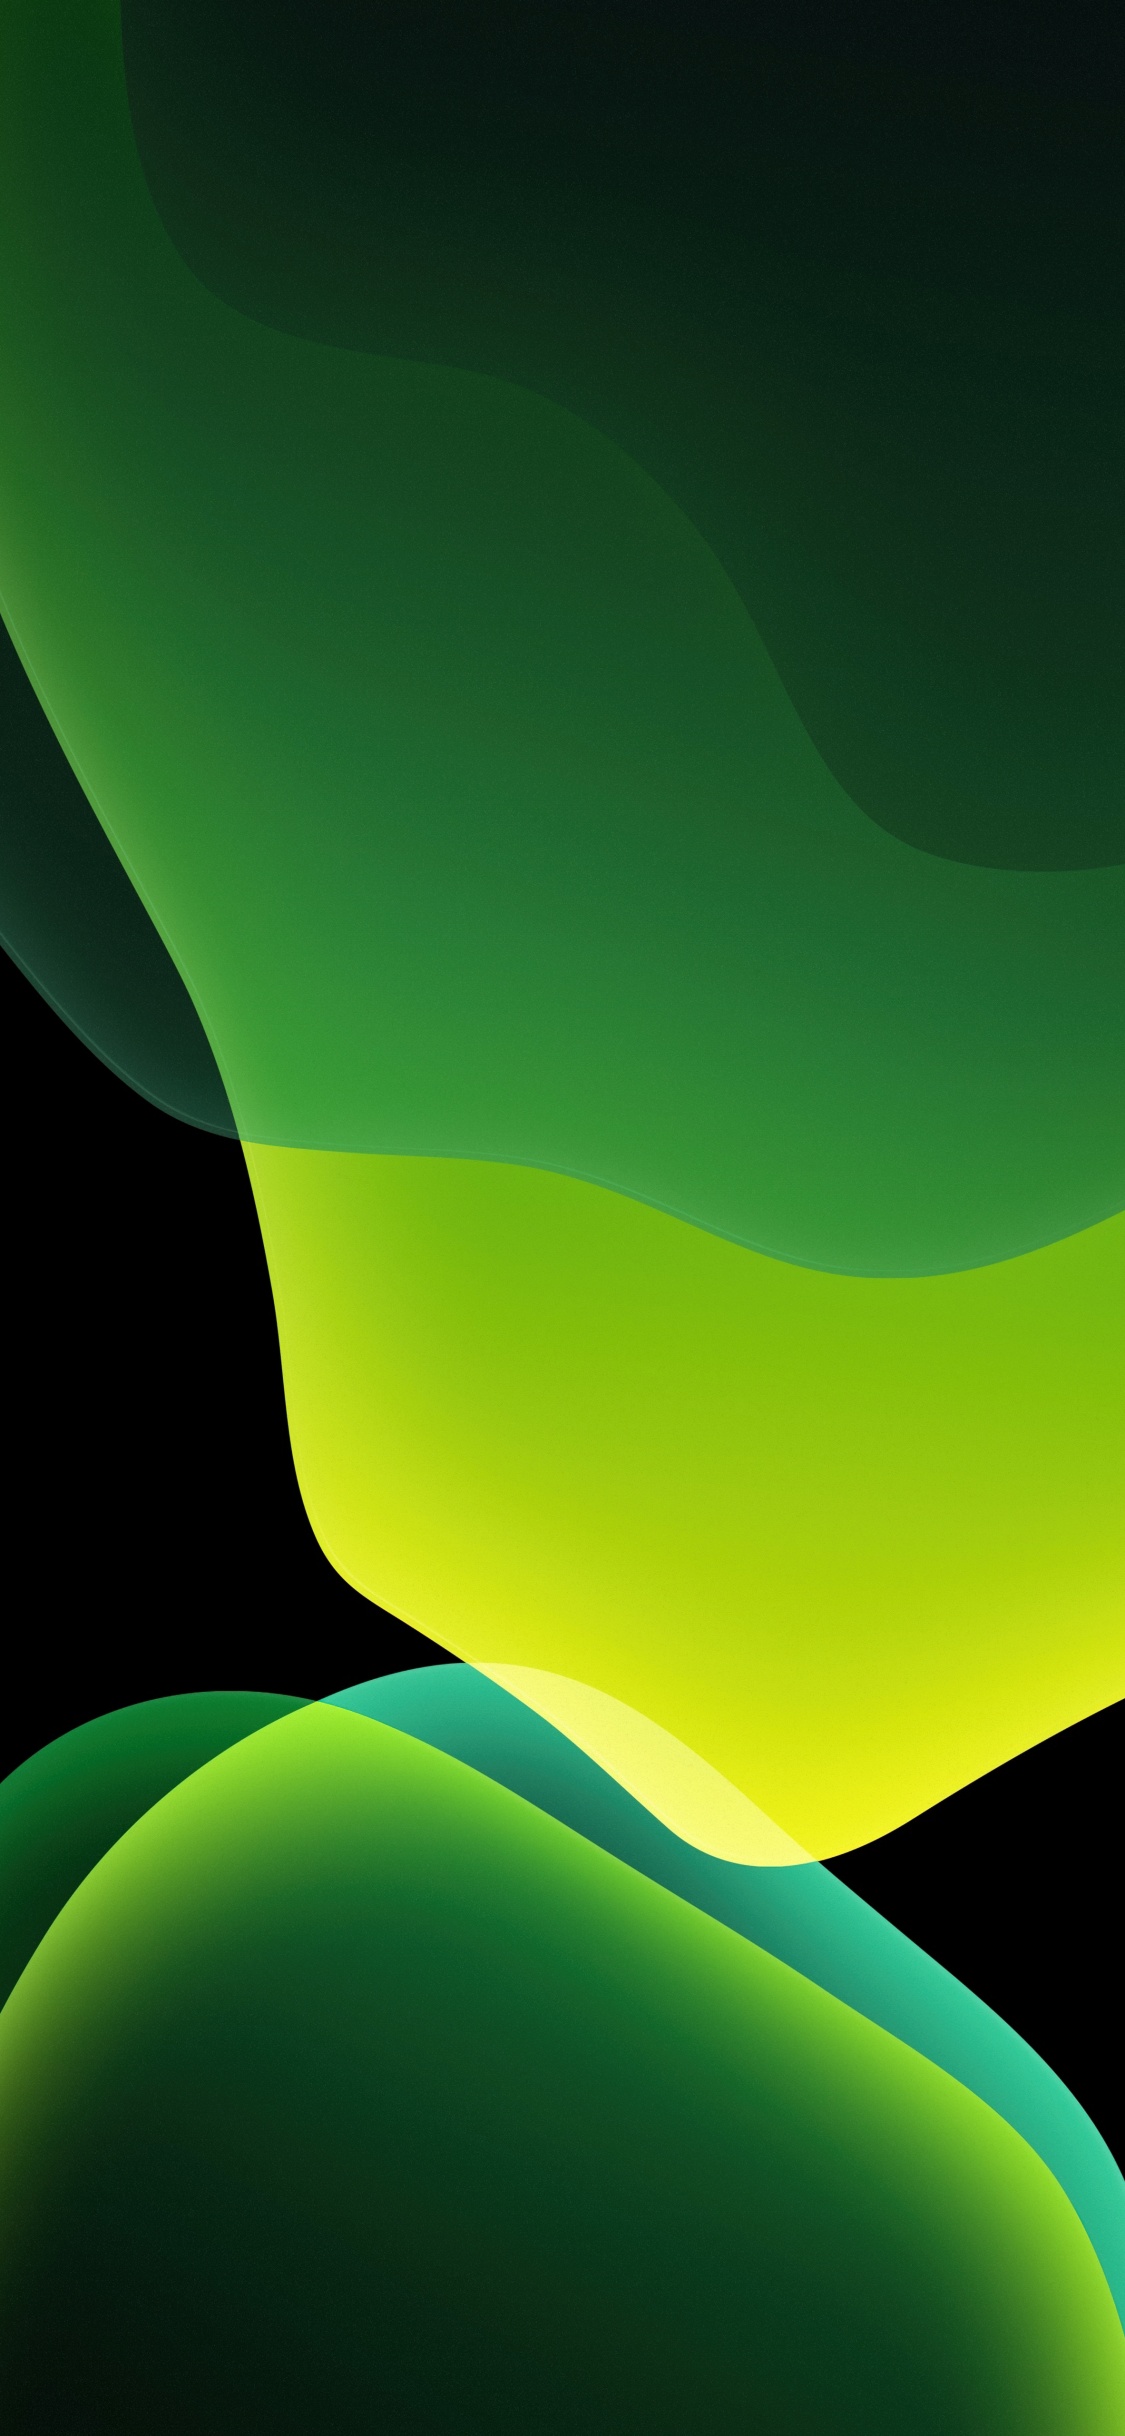 iOS 13 wallpaper green abstract: Mẫu hình nền với tông màu xanh lá đặc trưng của hệ điều hành iOS 13 sẽ khiến bạn đắm say với thiết kế trừu tượng độc đáo, thiên nhiên trong lành và tươi mới. Bạn đang tìm kiếm một hình nền độc đáo và bắt mắt? Hãy thử ngay mẫu này nhé!